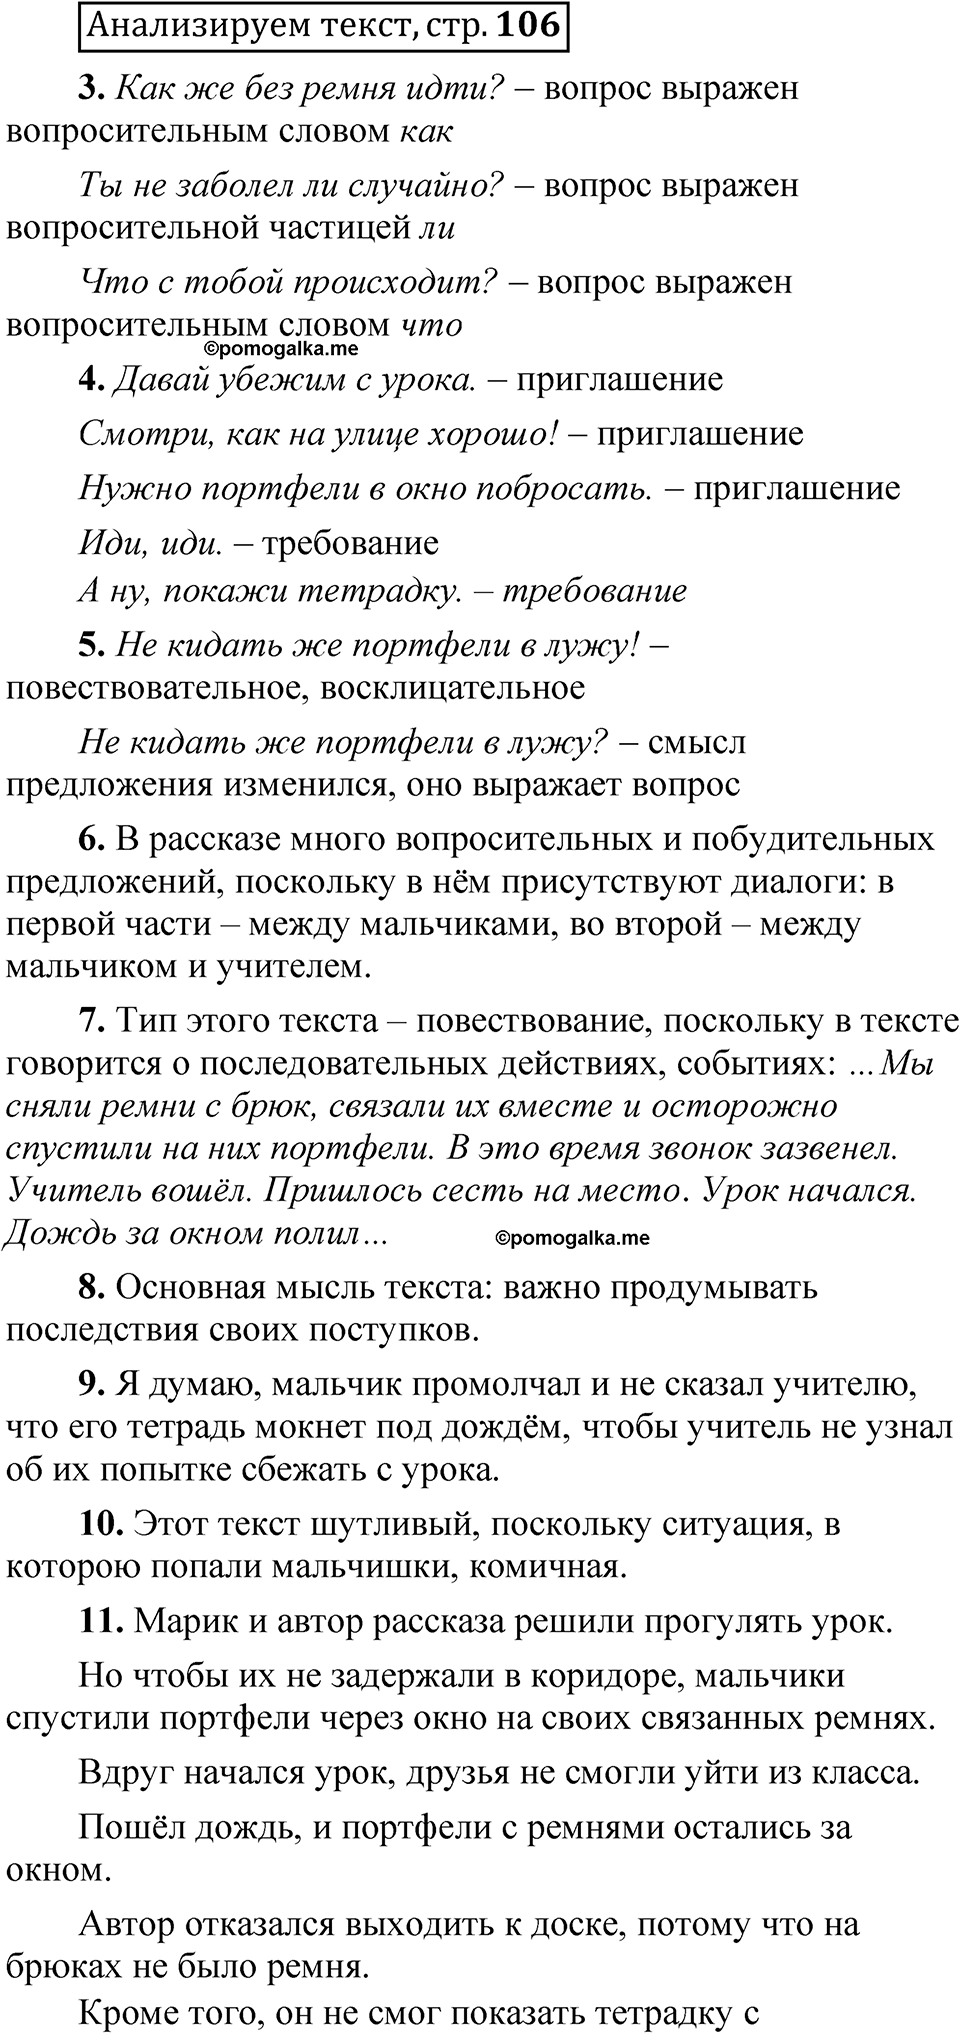 страница 105 Анализируем текст русский язык 5 класс Быстрова, Кибирева 1 часть 2021 год